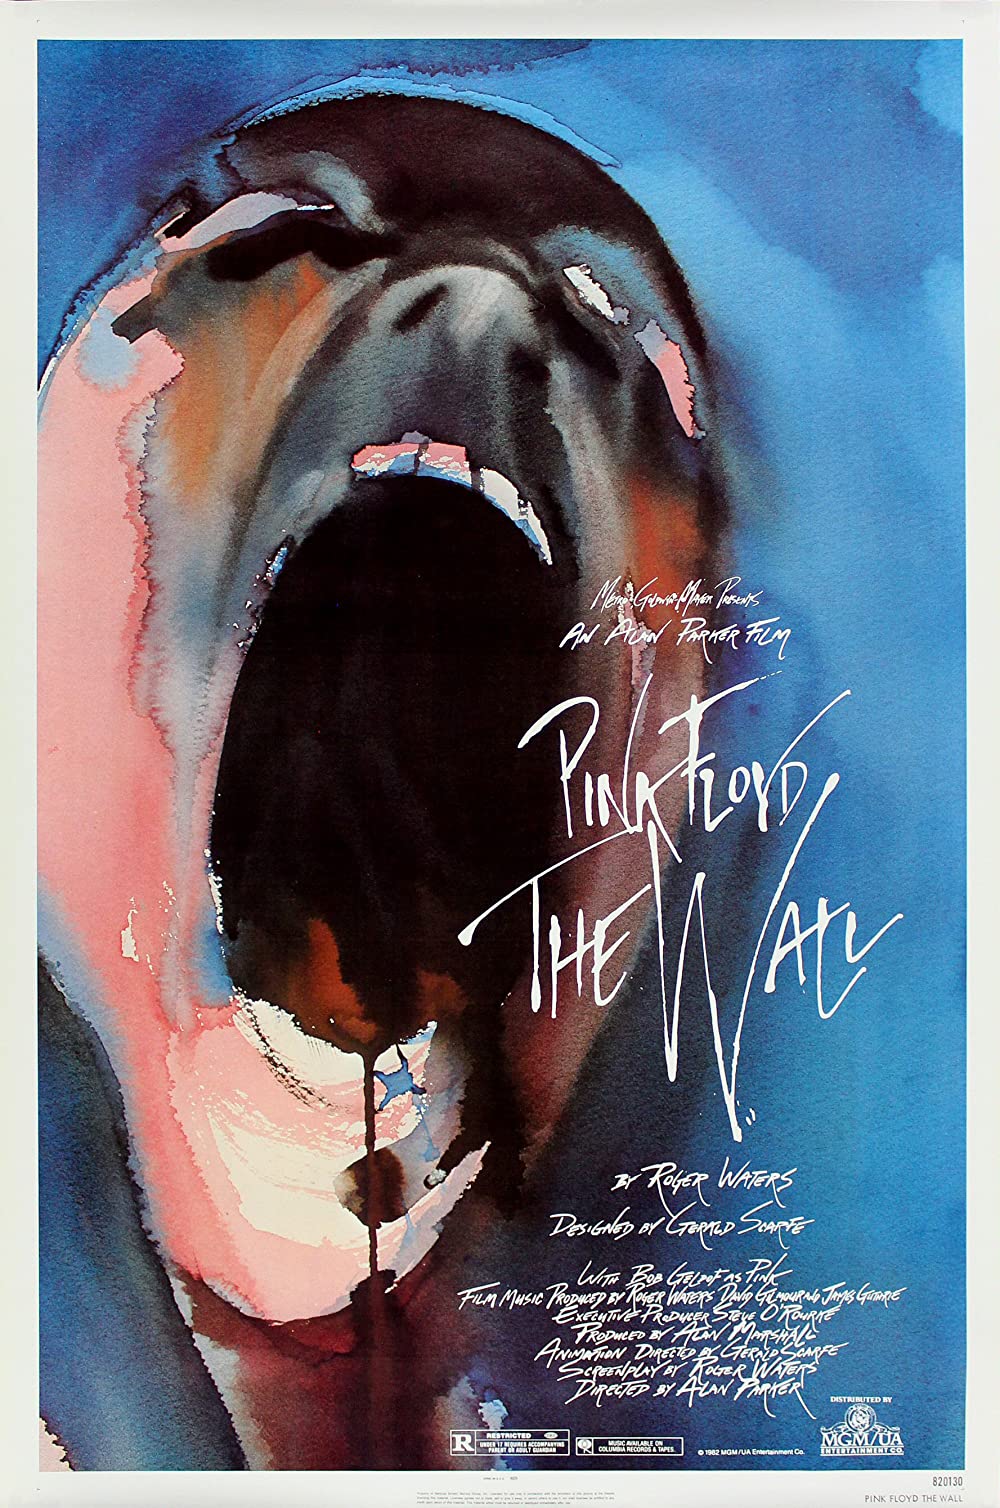 Filmbeschreibung zu Pink Floyd: The Wall